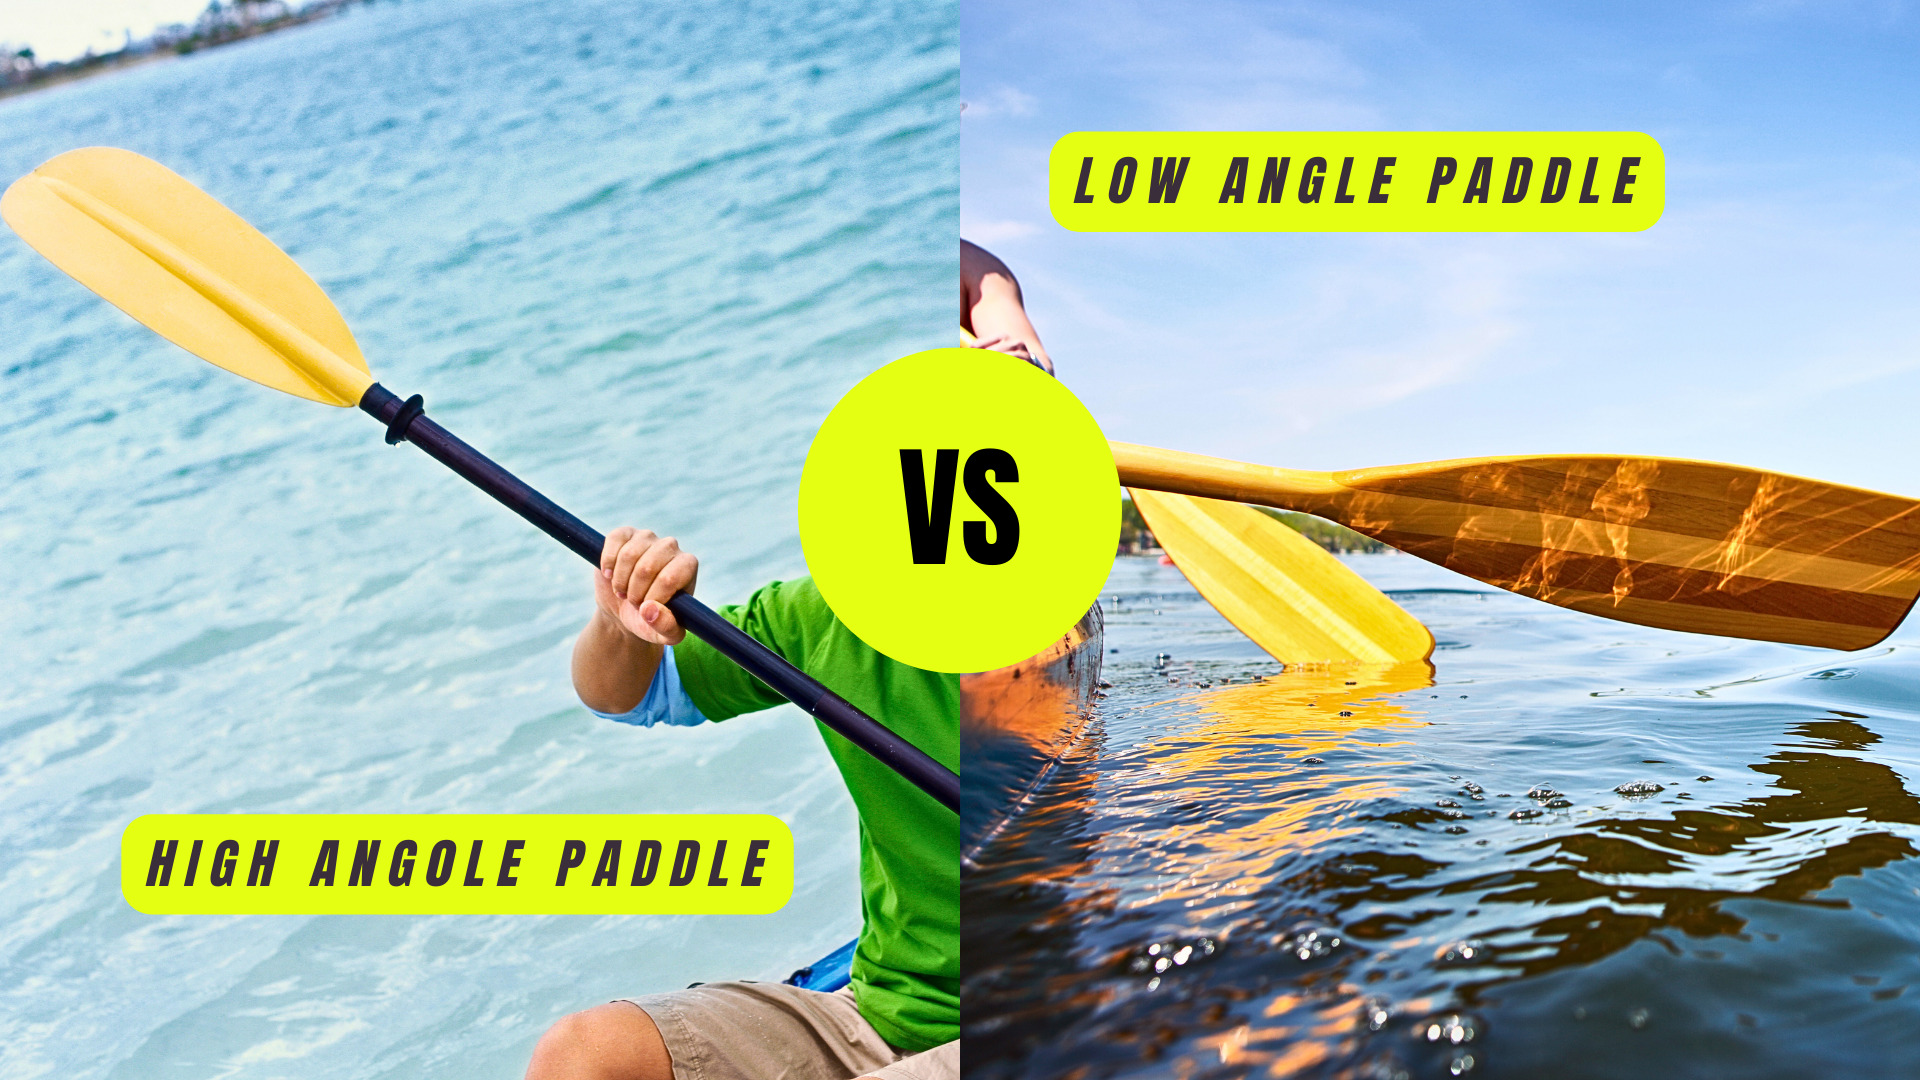 High Angle vs Low Angle Paddle